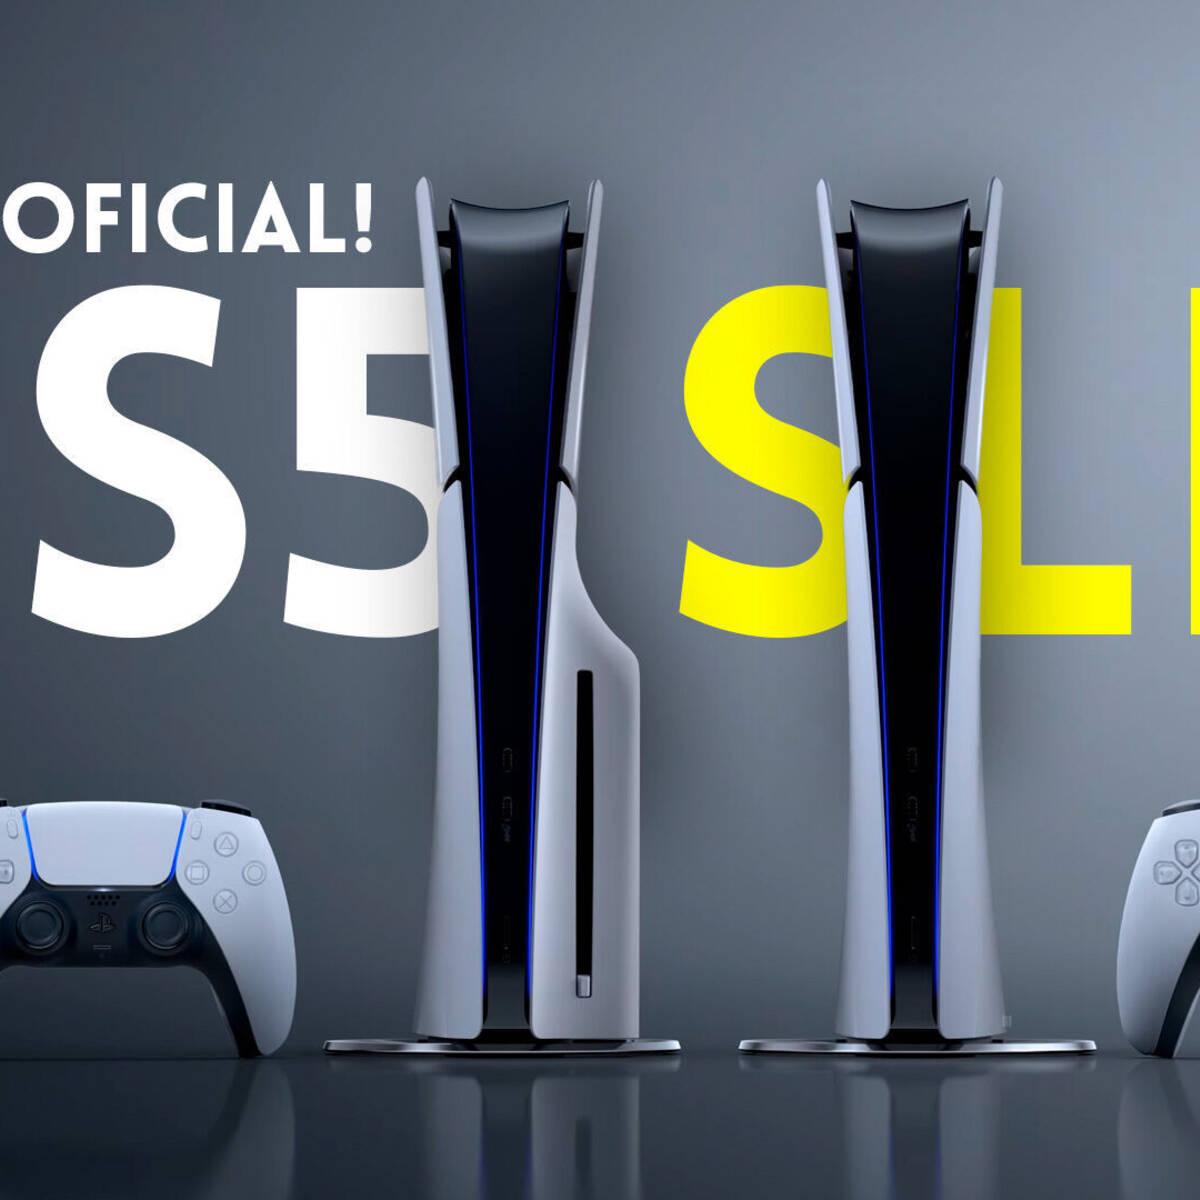 PS5 diseño renovado: Ya anunciaron el PS5 Slim oficialmente